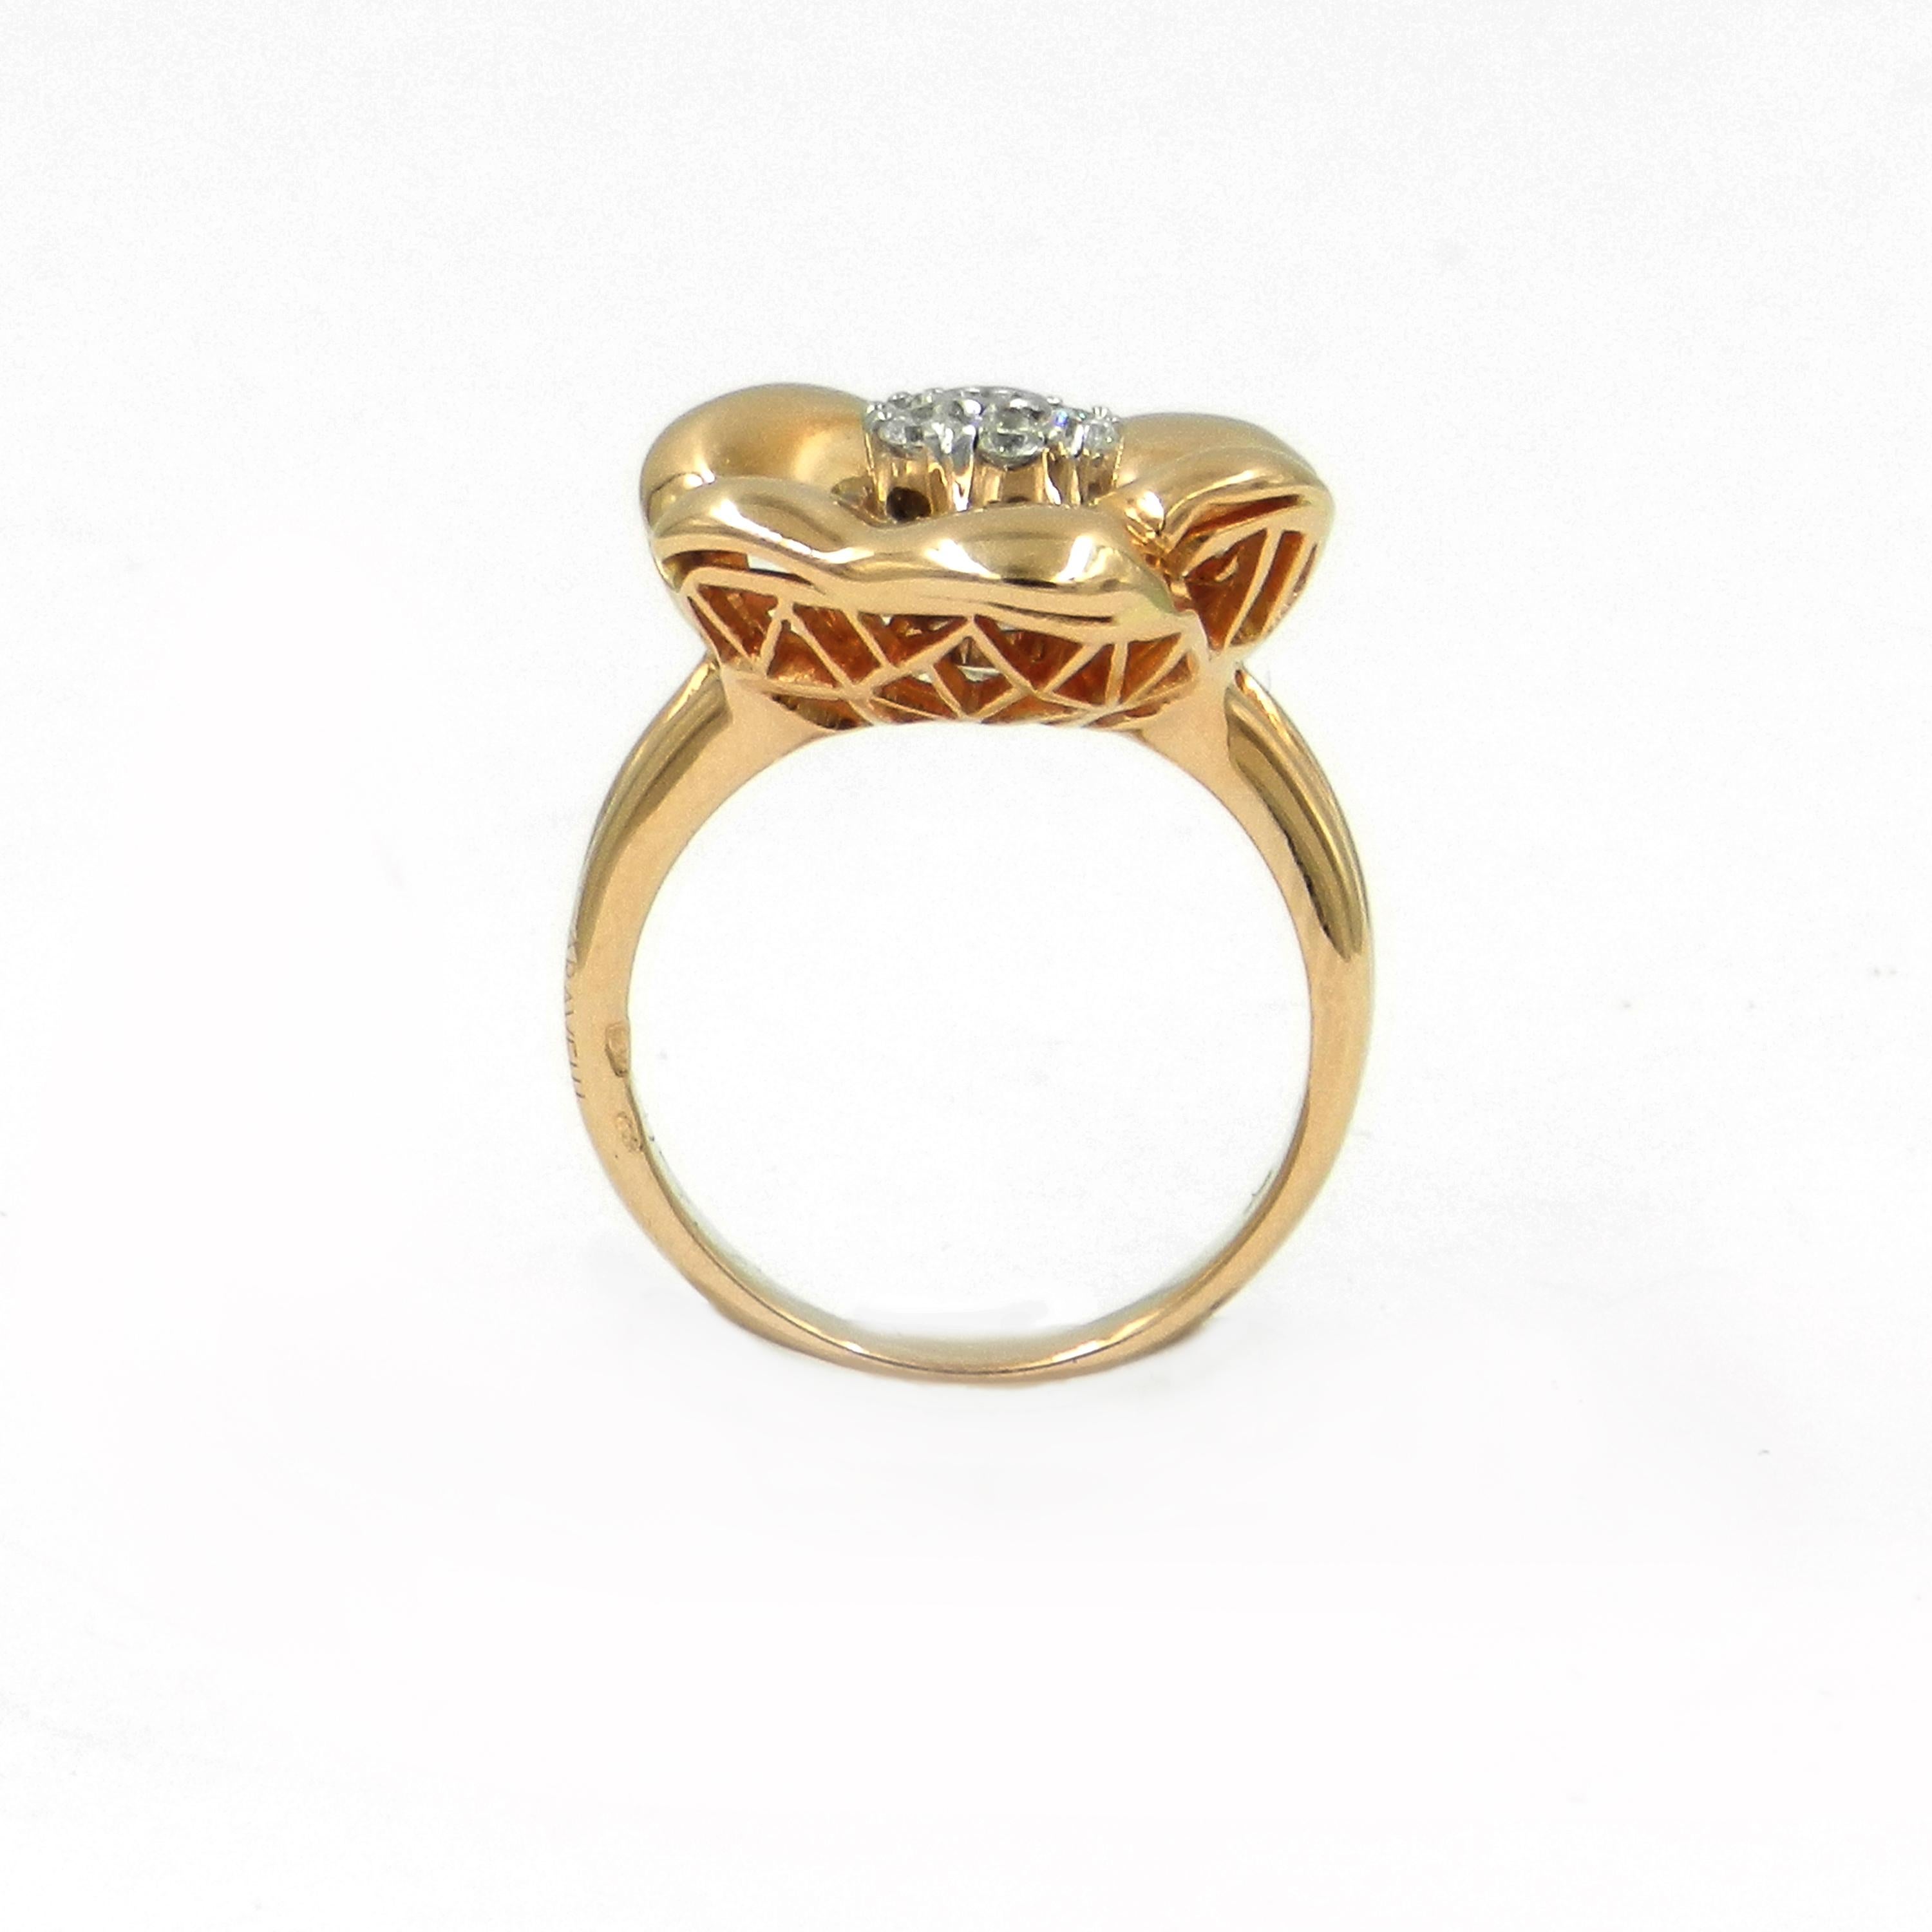 18KT Rose Gold White Diamonds  Flower Garavelli Ring
Finger size 55  
Made In Italy
18 kt GOLD gr : 10,93
WHITE DIAMONDS ct : 0,30
 